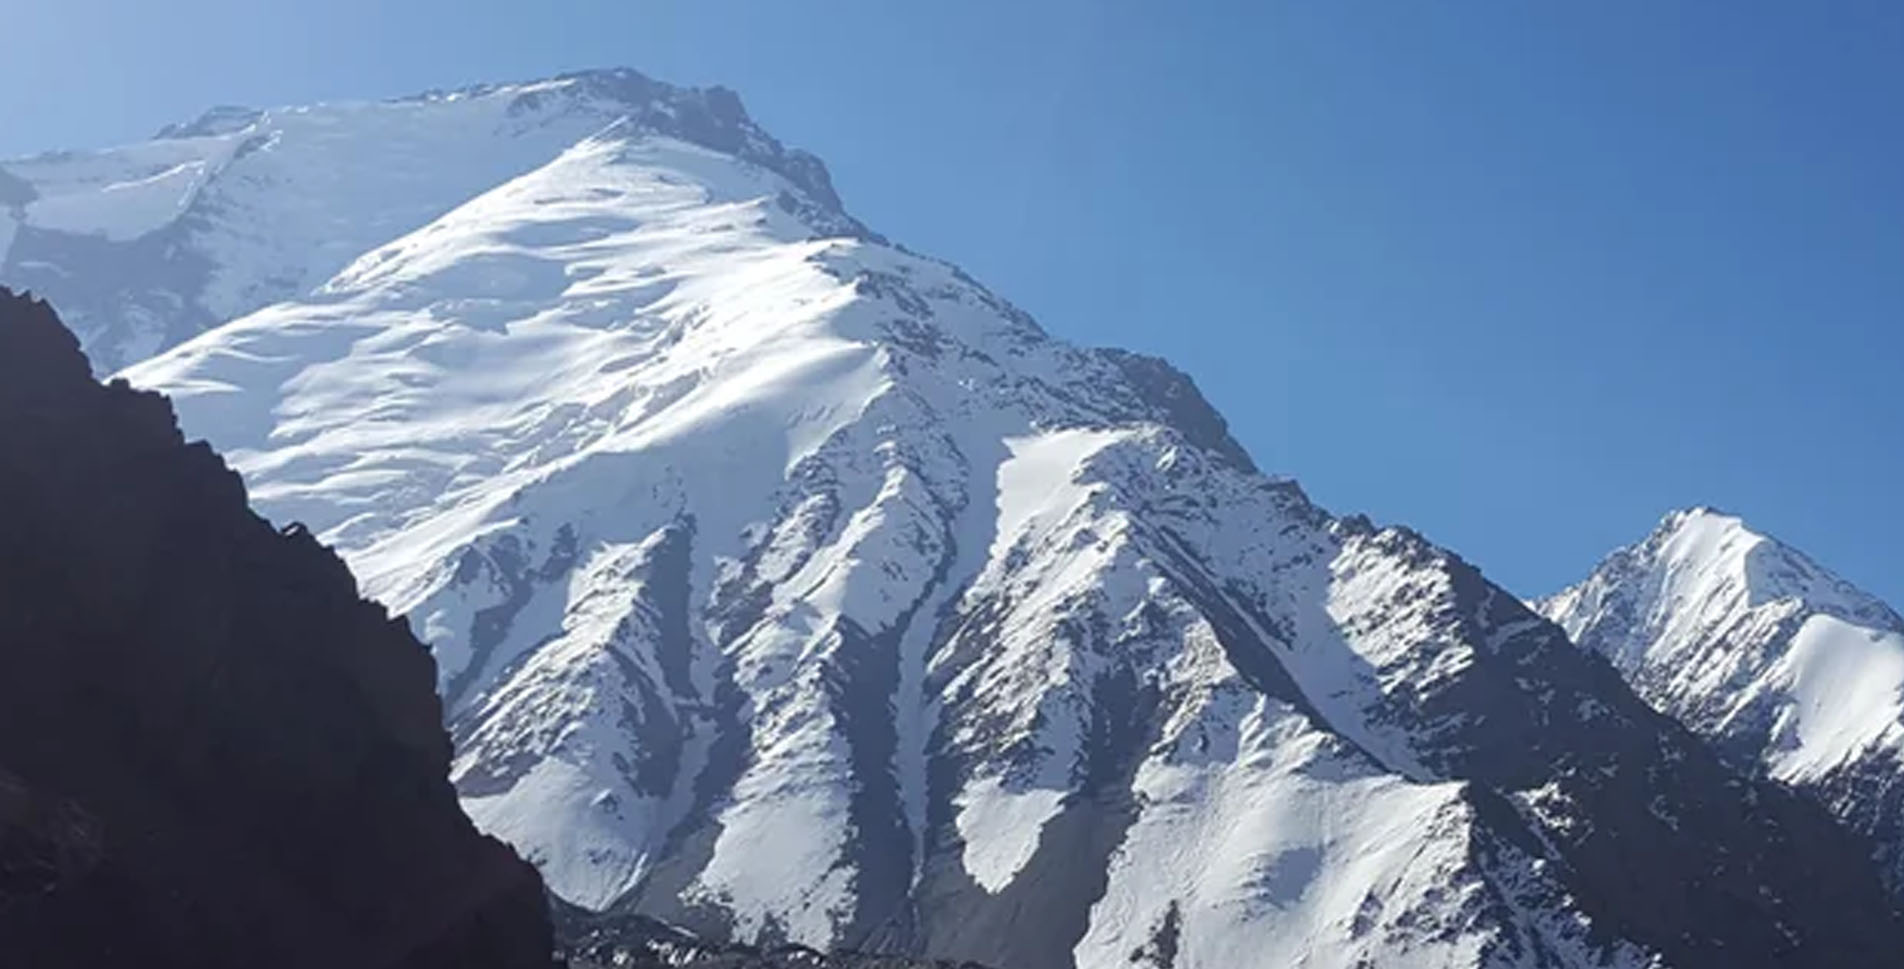 Noshaq peak 7492M Expedition 